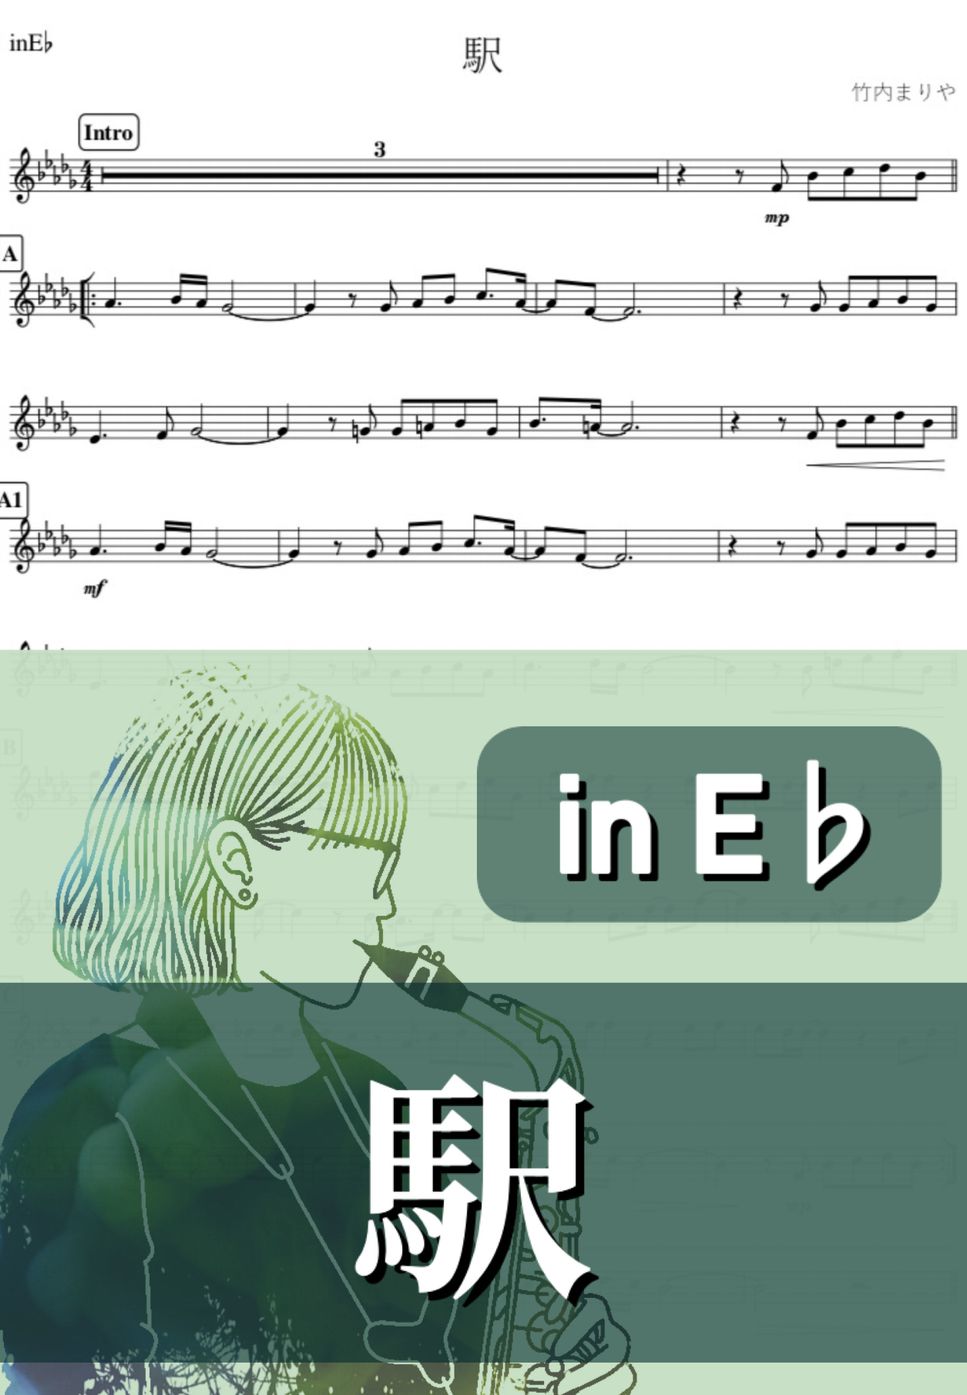 竹内まりや - 駅 (E♭) by kanamusic